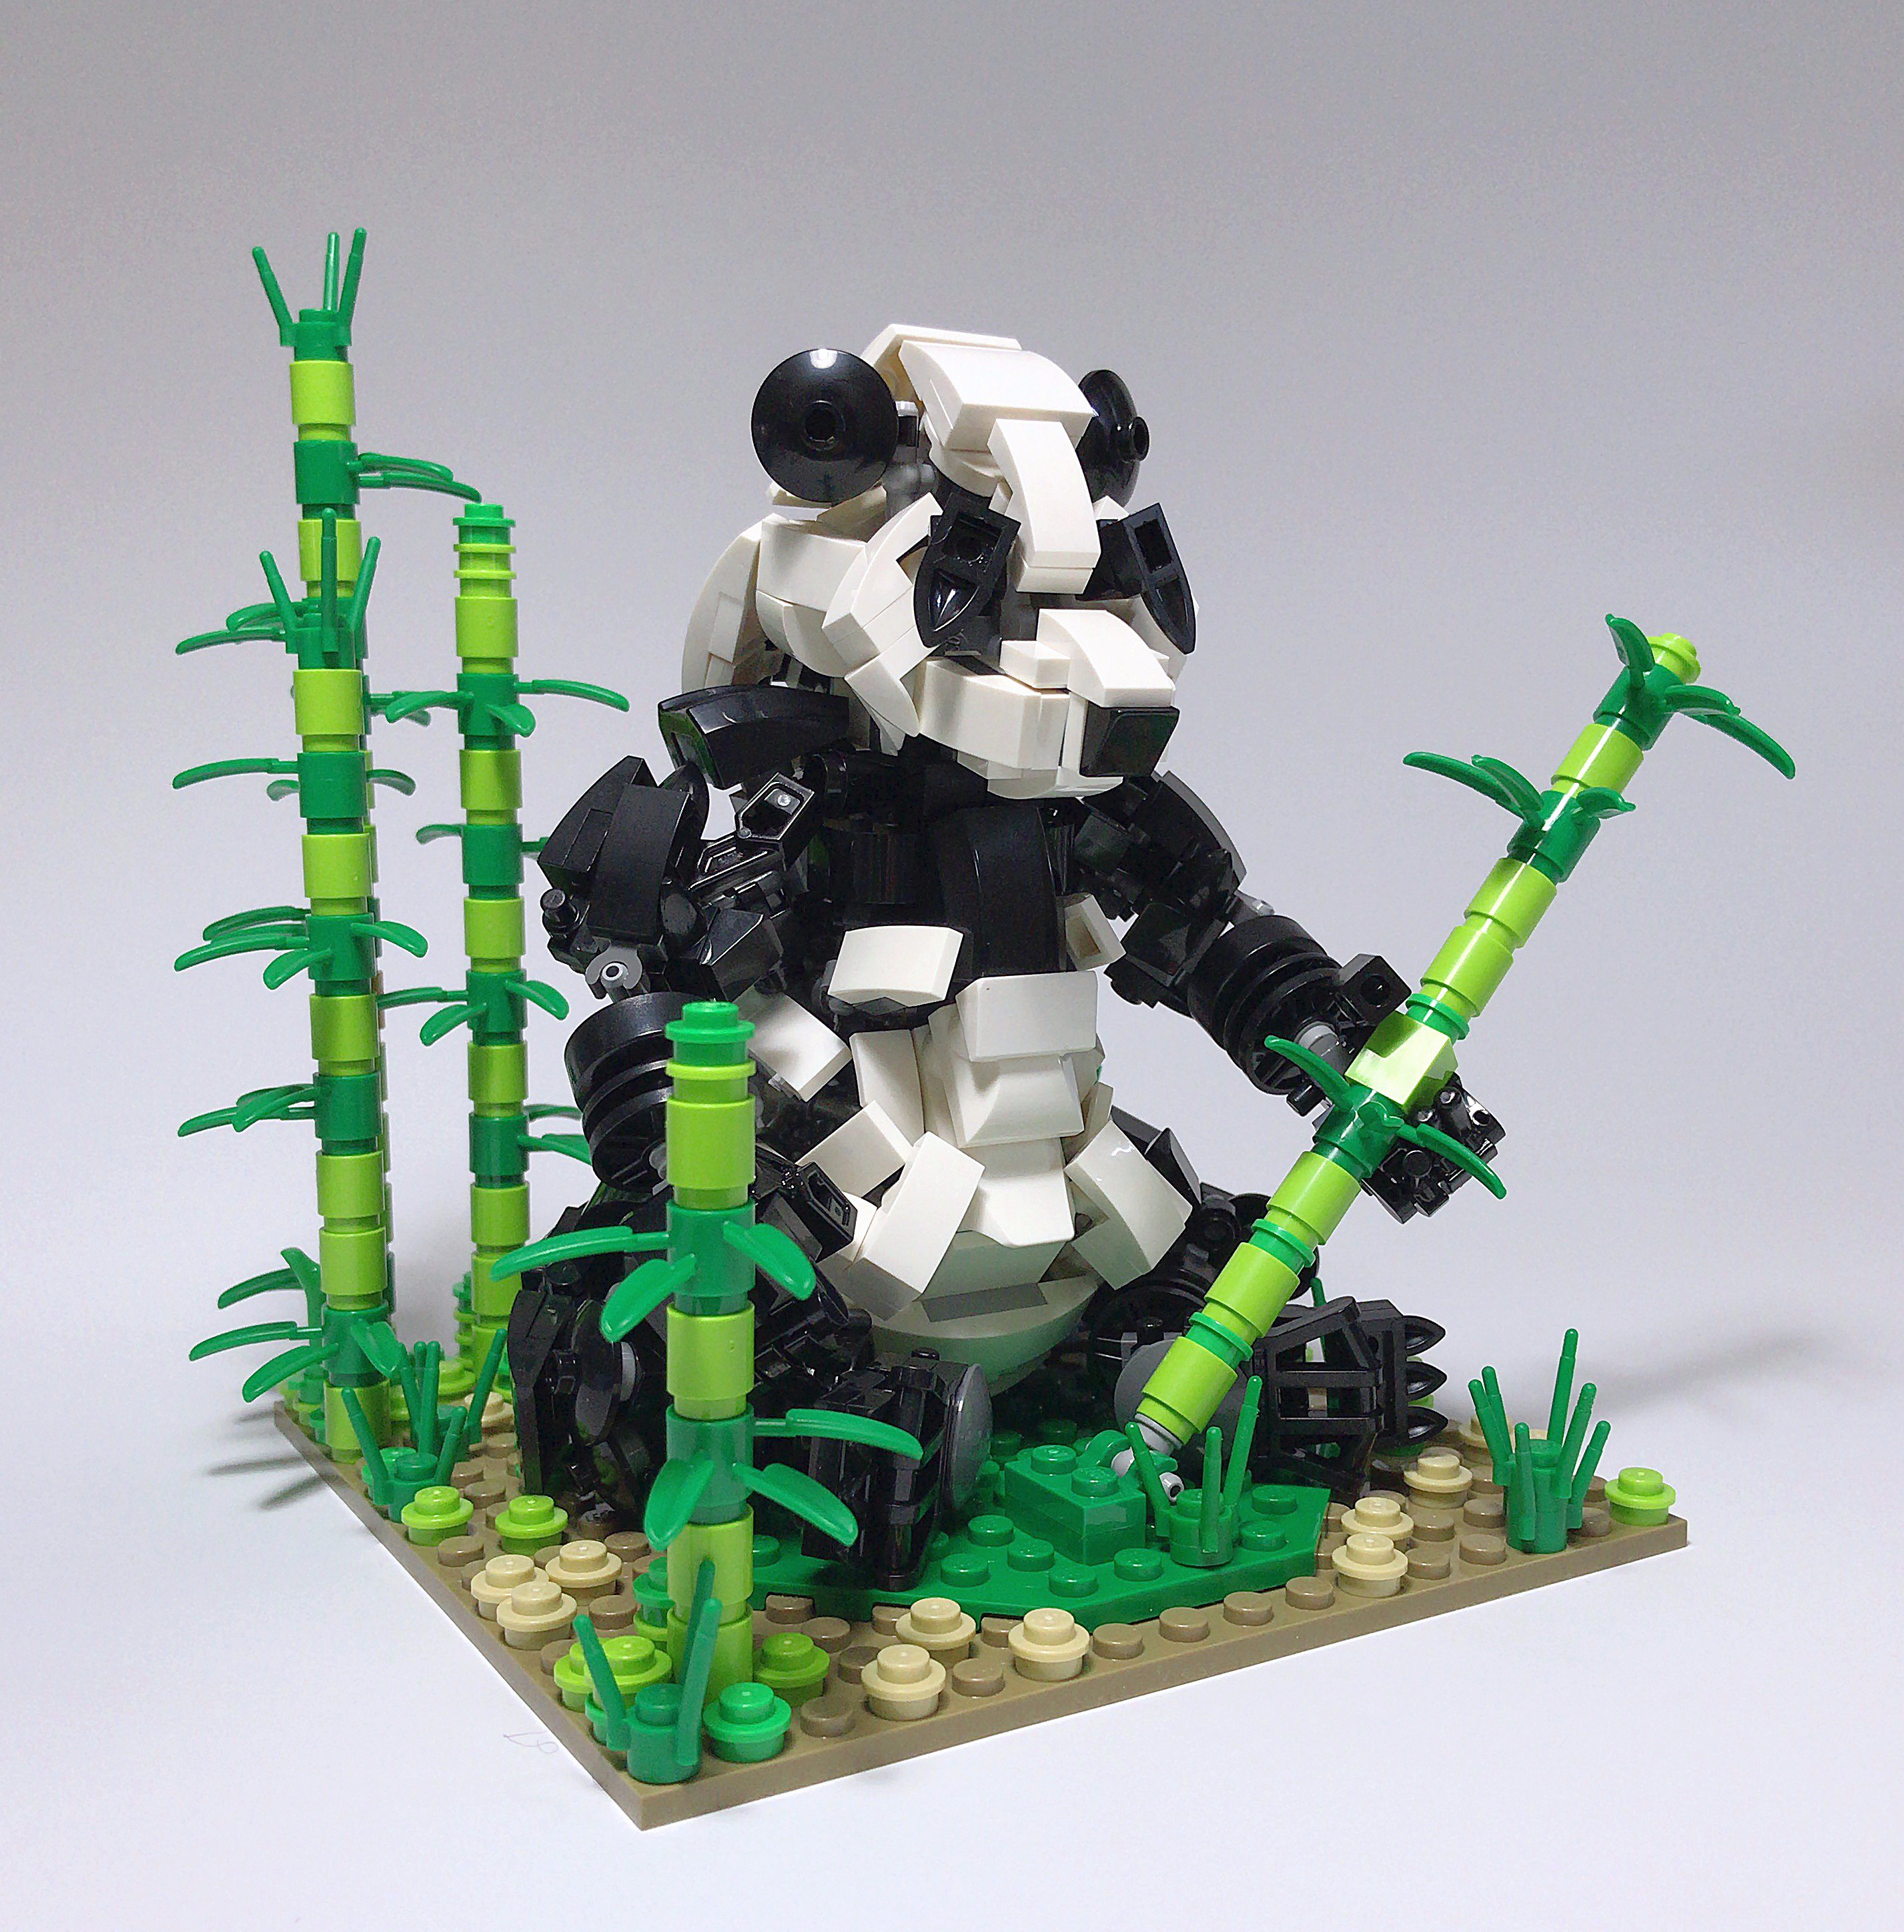 にかいどう 機械生物図鑑 Twitterissa パンダのシャンシャンが人気らしいので 僕の作ったレゴパンダもご覧ください レゴ Lego パンダ シャンシャン T Co Gsspmf8d5u Twitter